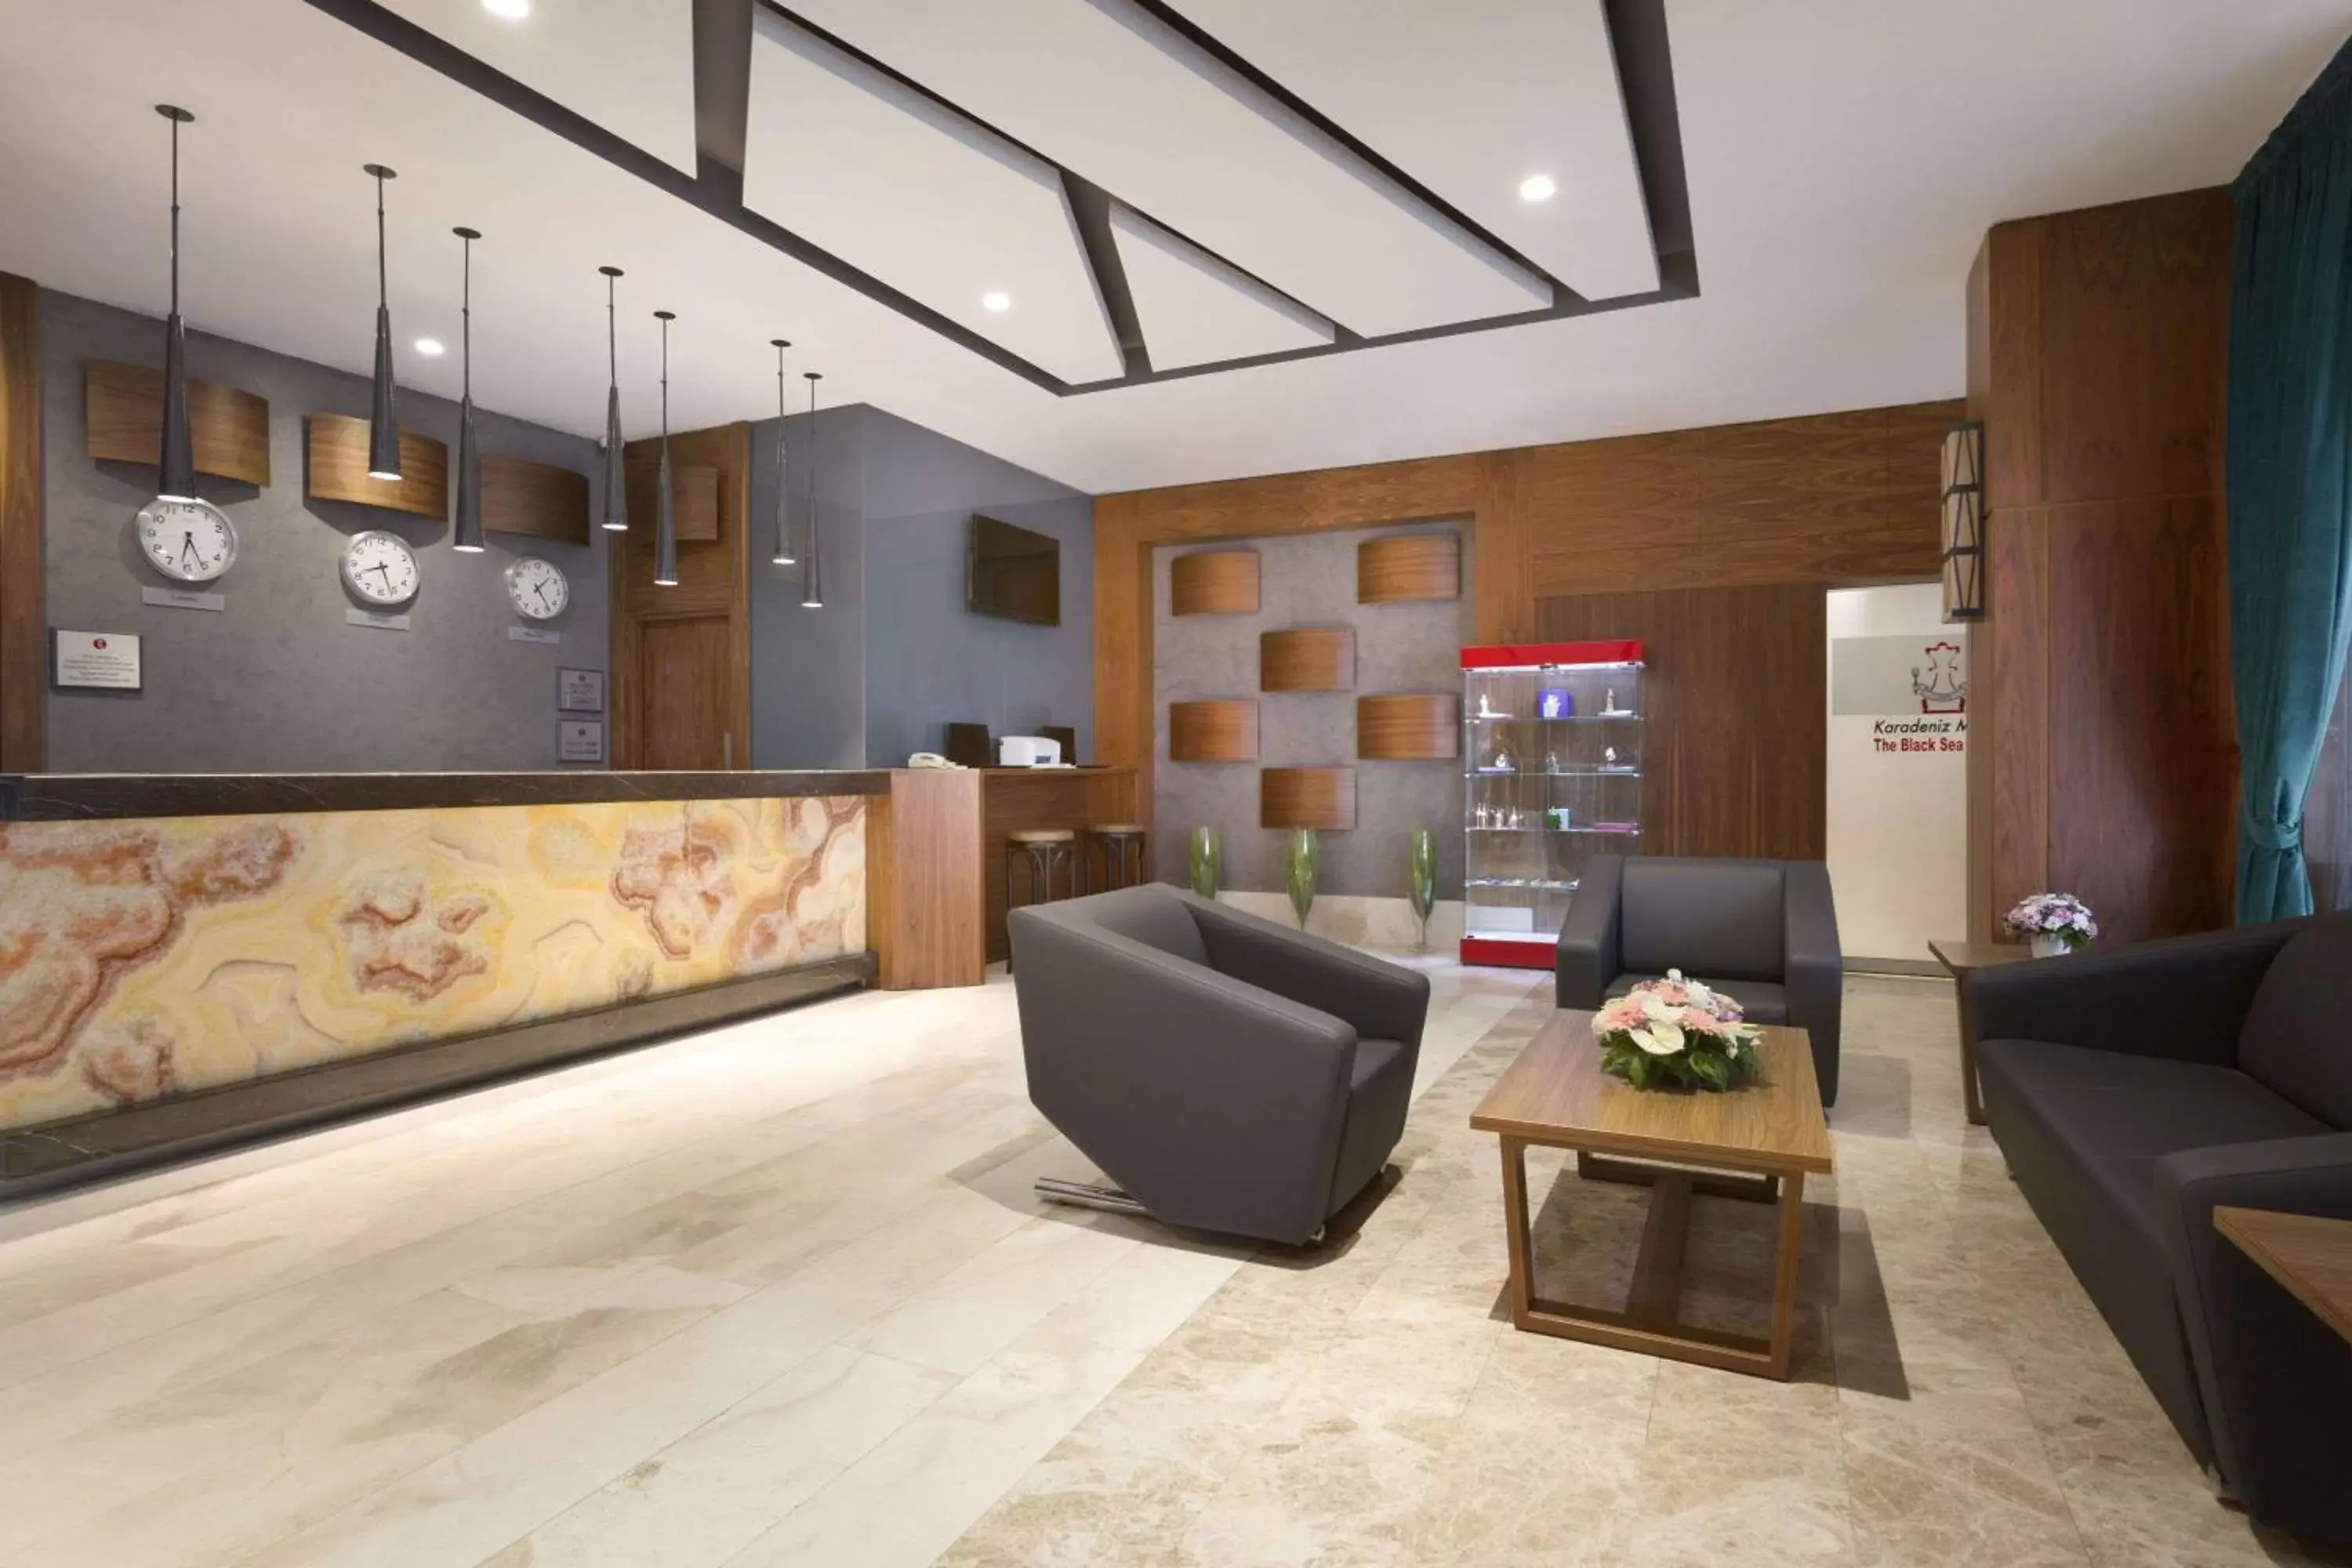 Lobby or reception, Lobby/Reception in Ramada by Wyndham Istanbul Florya